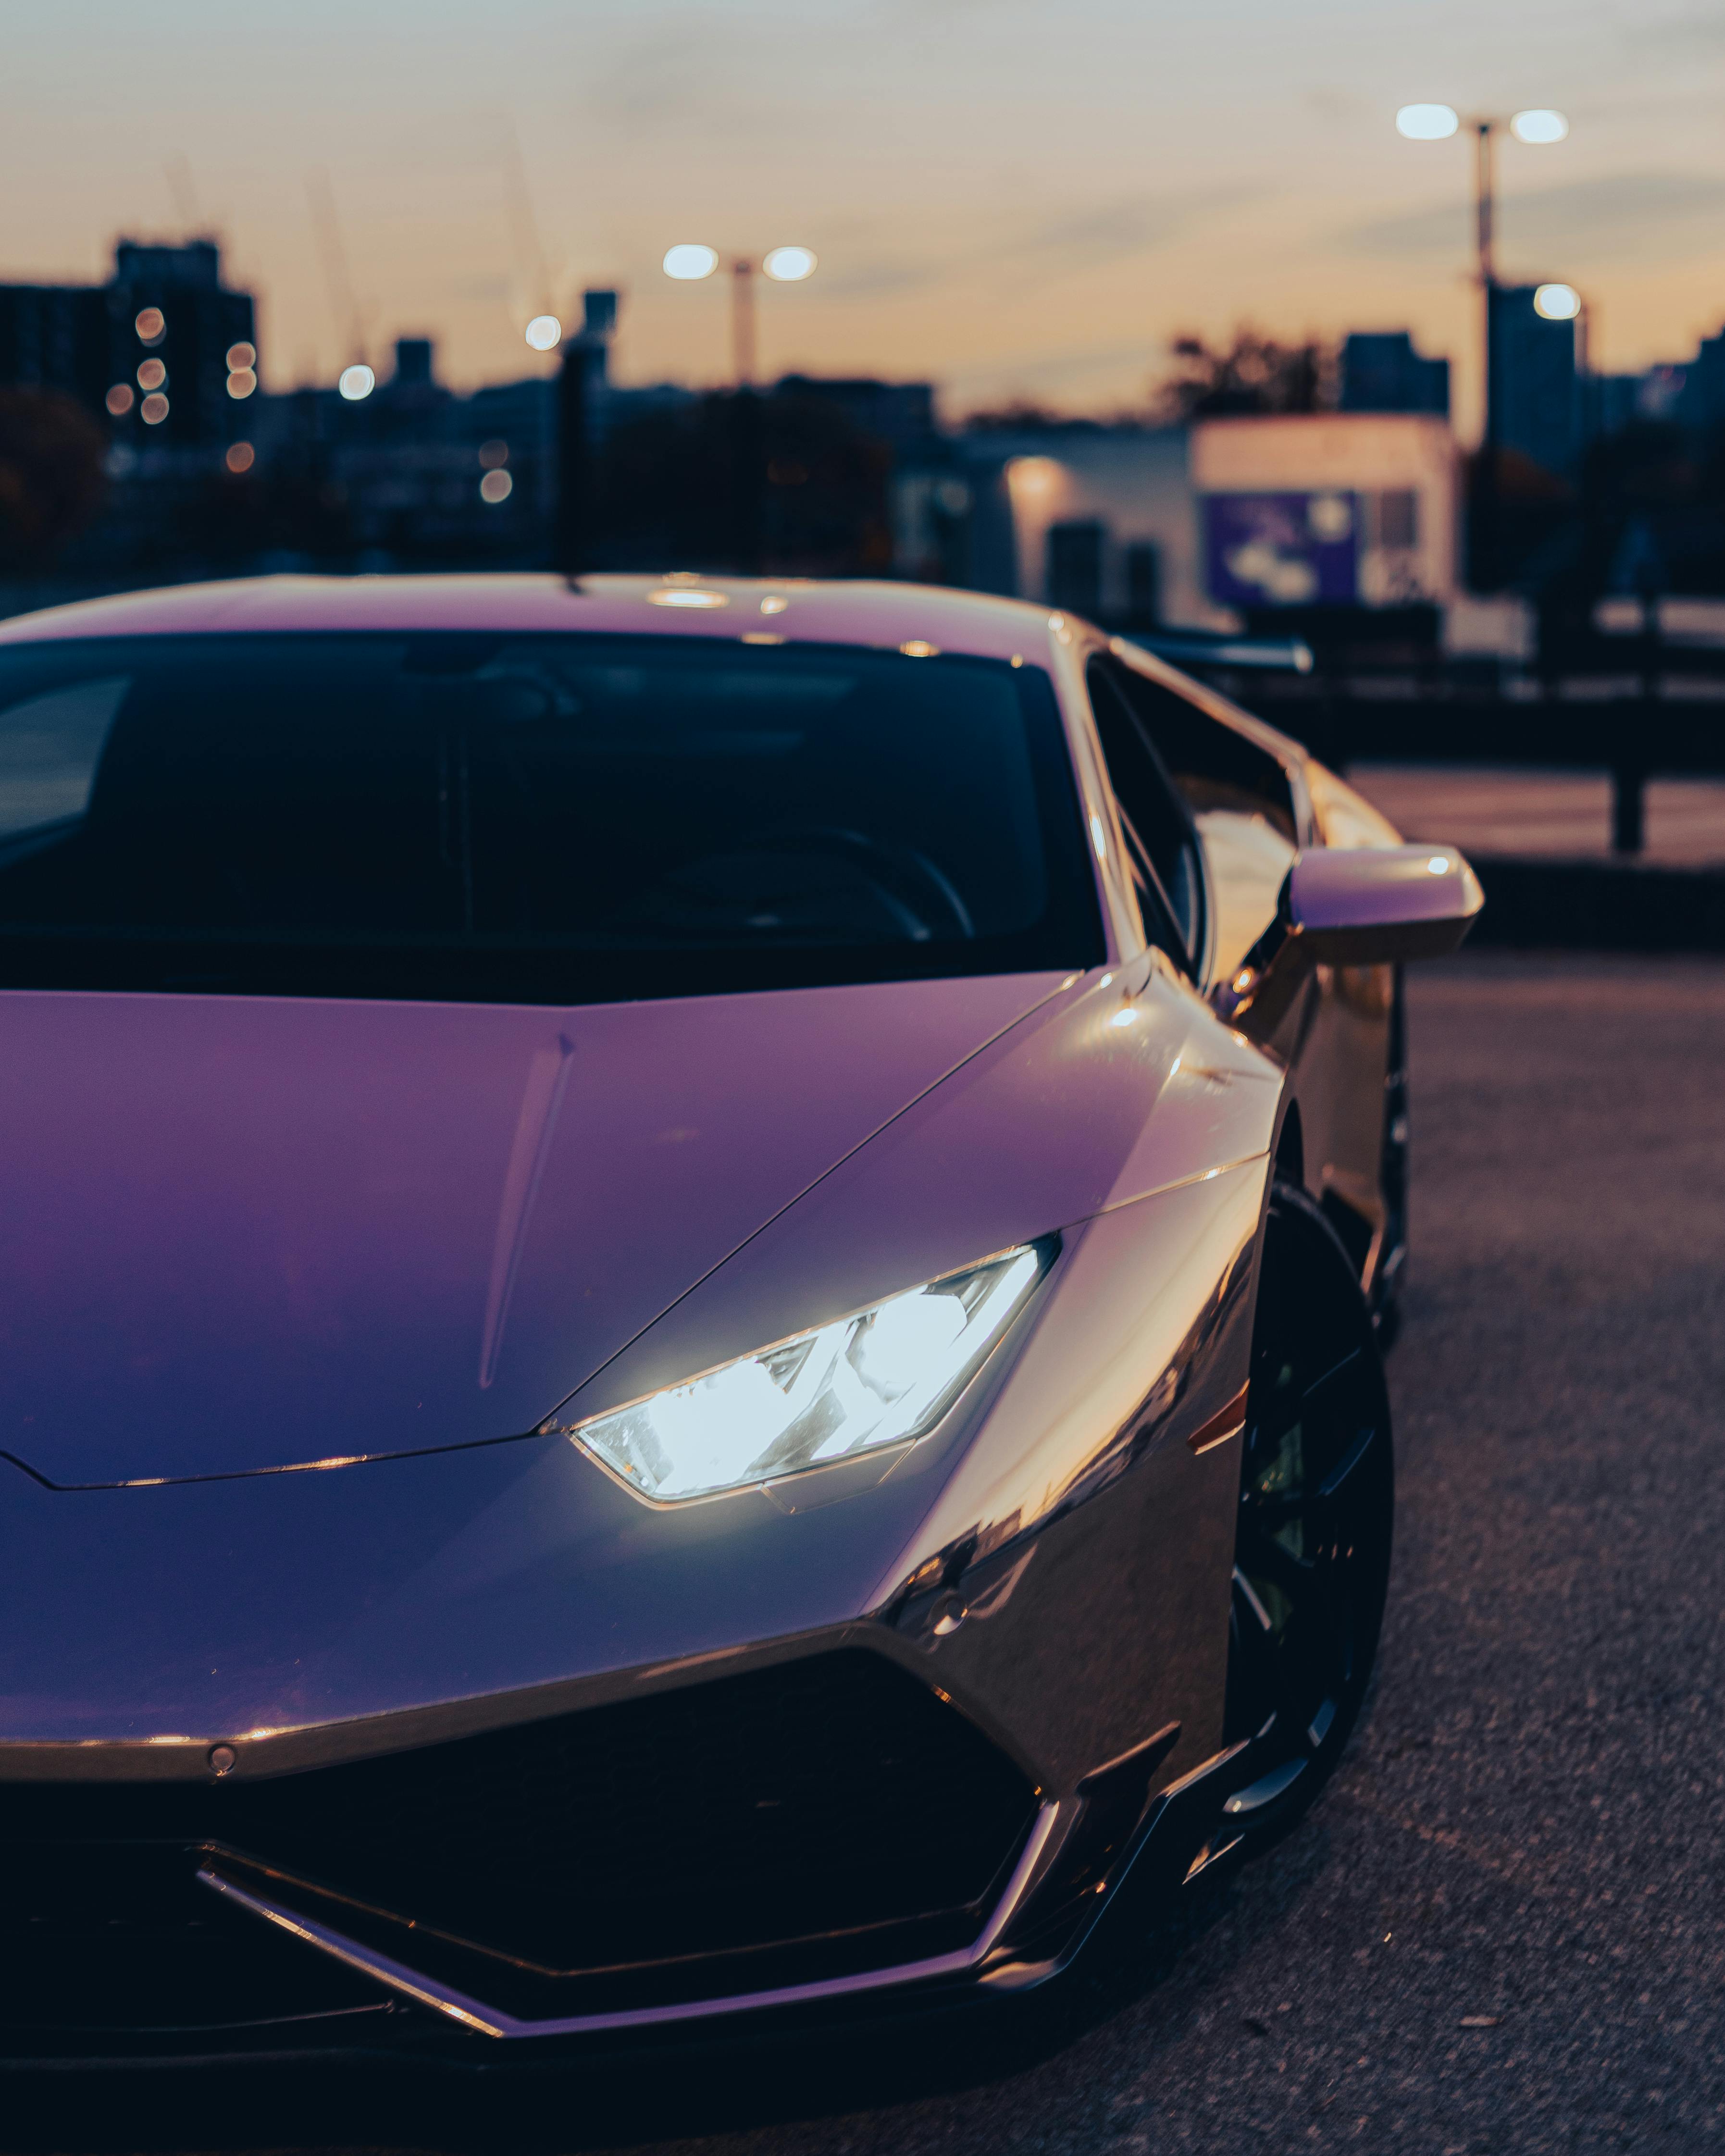 Purple Lamborghini Parked on Parking Lot · Free Stock Photo